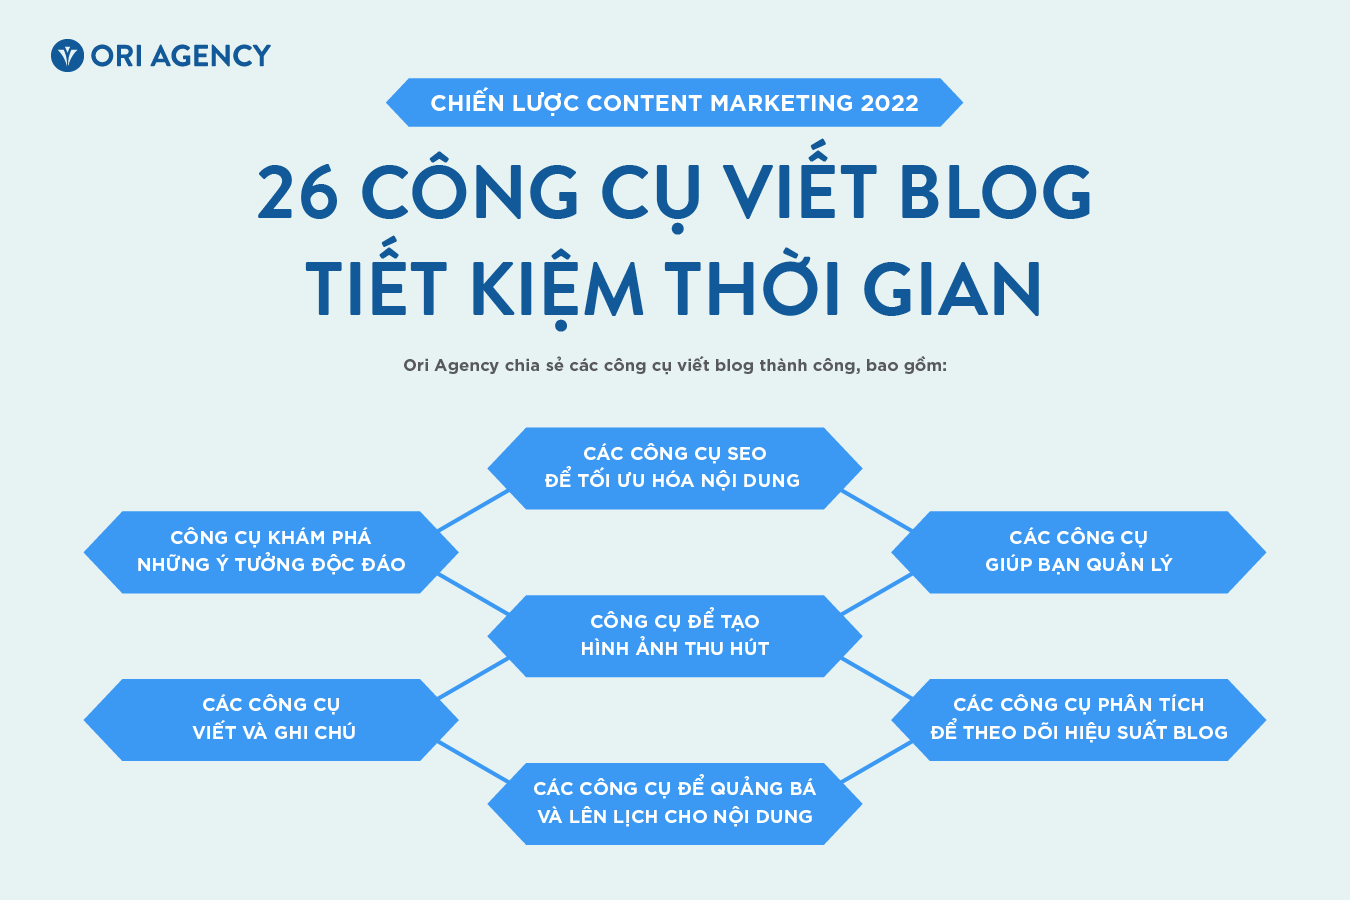 [Infographic] 26 Công cụ viết blog tiết kiệm thời gian cho chiến lược Content Marketing 2023